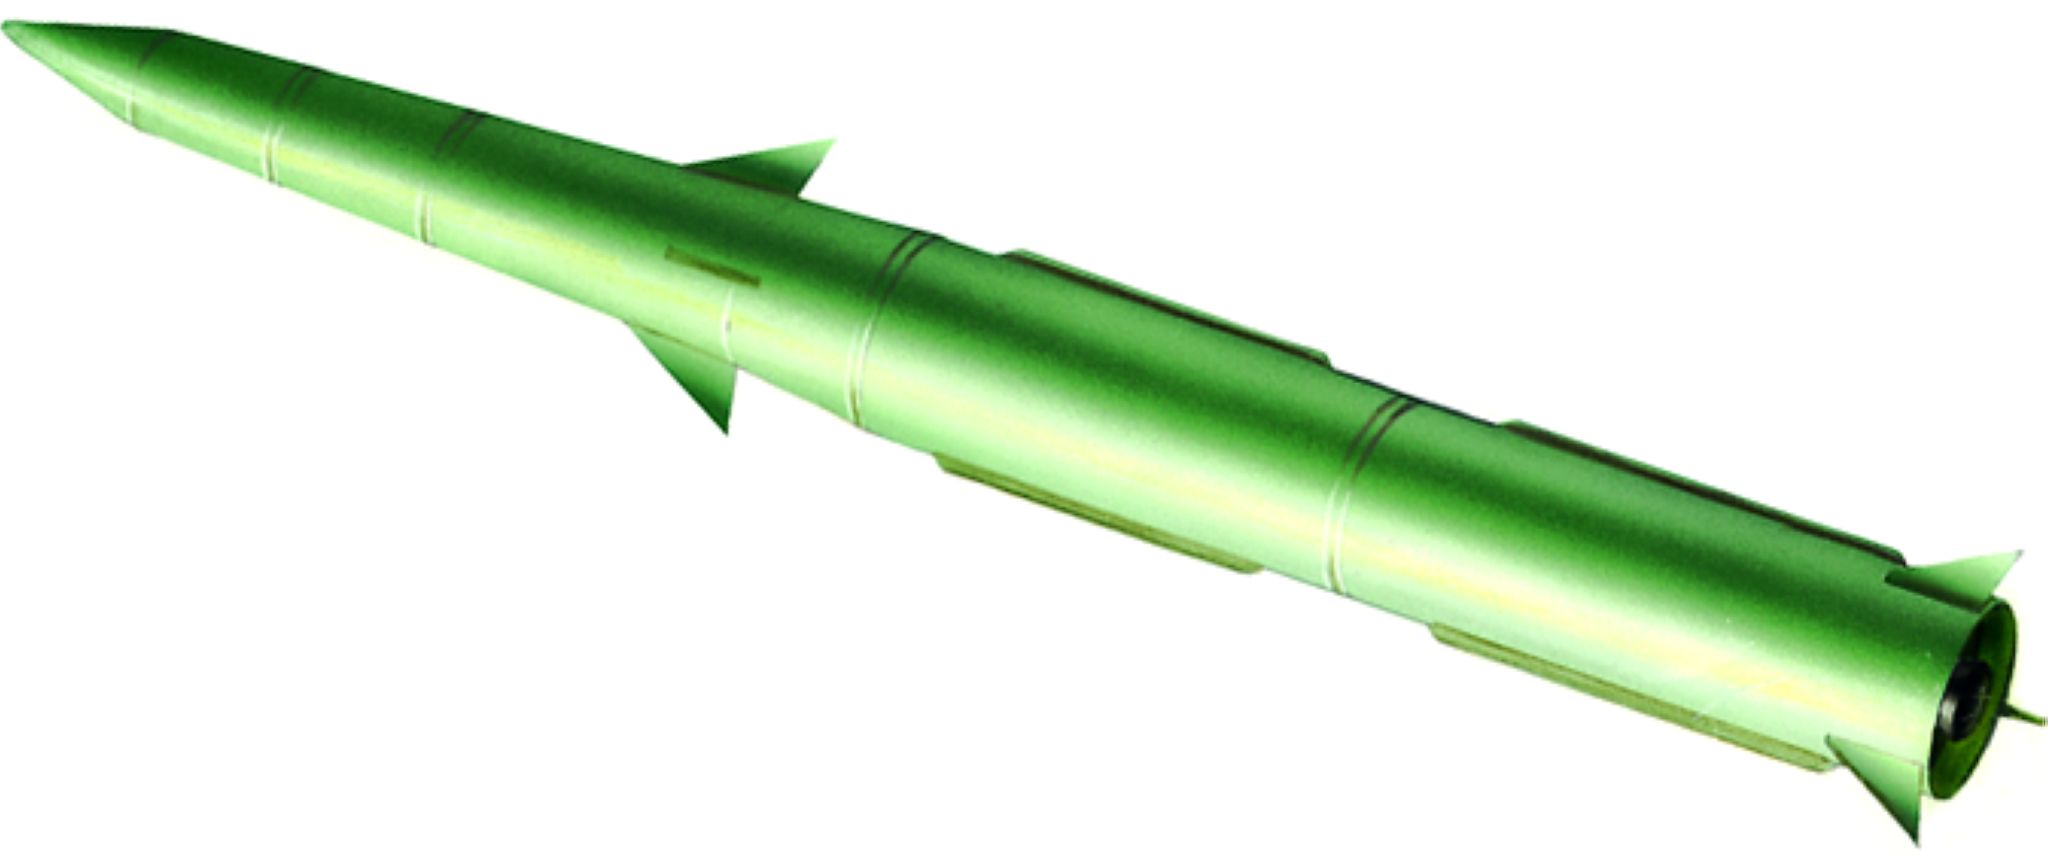 un missile nucléaire